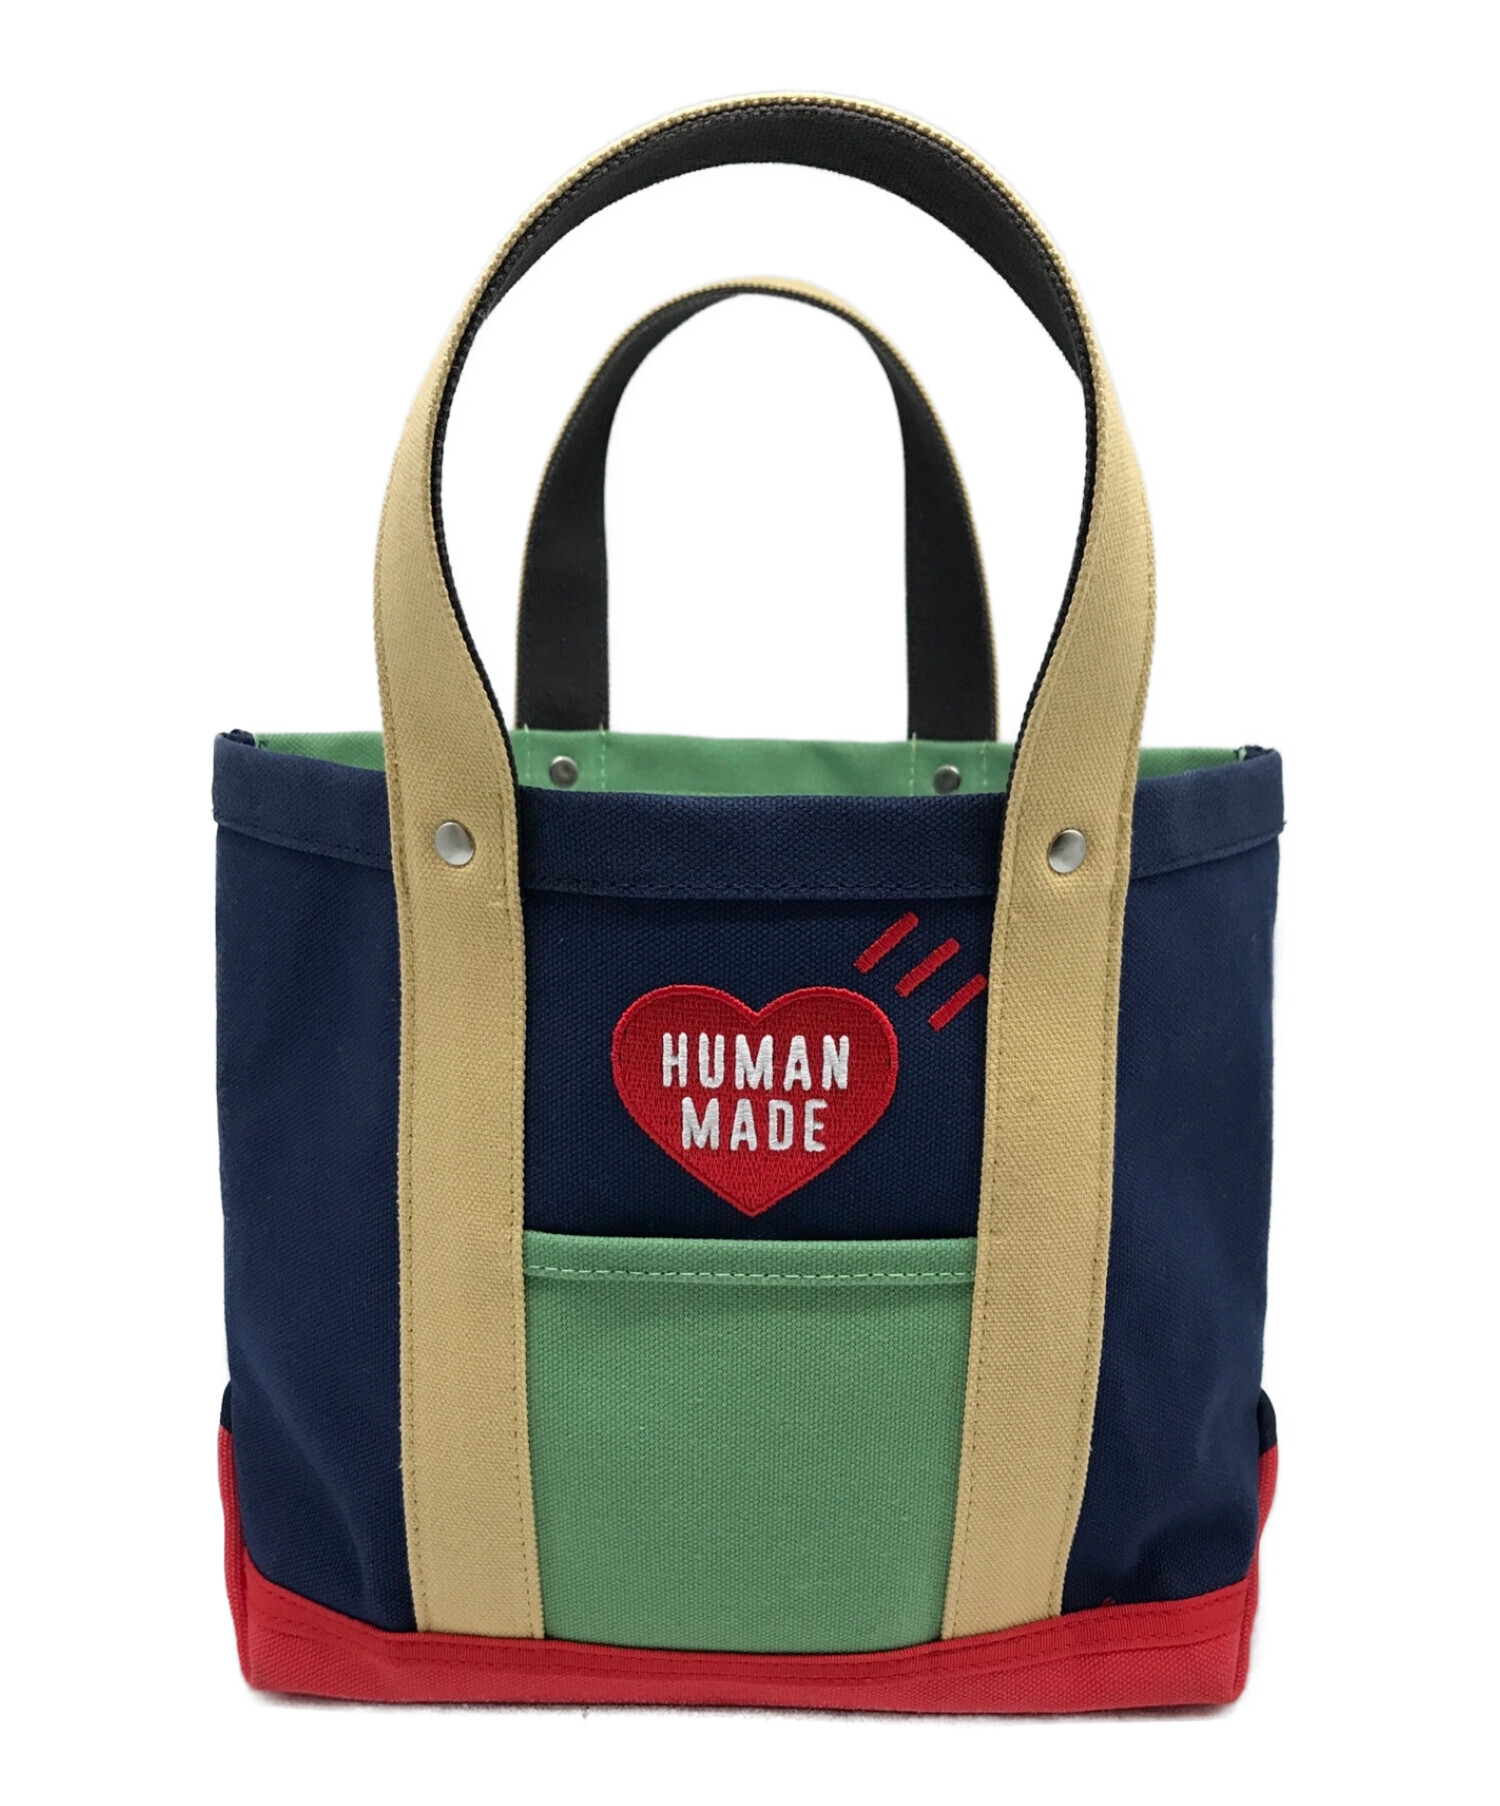 HUMAN MADE (ヒューマンメイド) multi color tote bag small マルチ カラー トートバッグ スモール  ネイビー×レッド サイズ:実寸参照